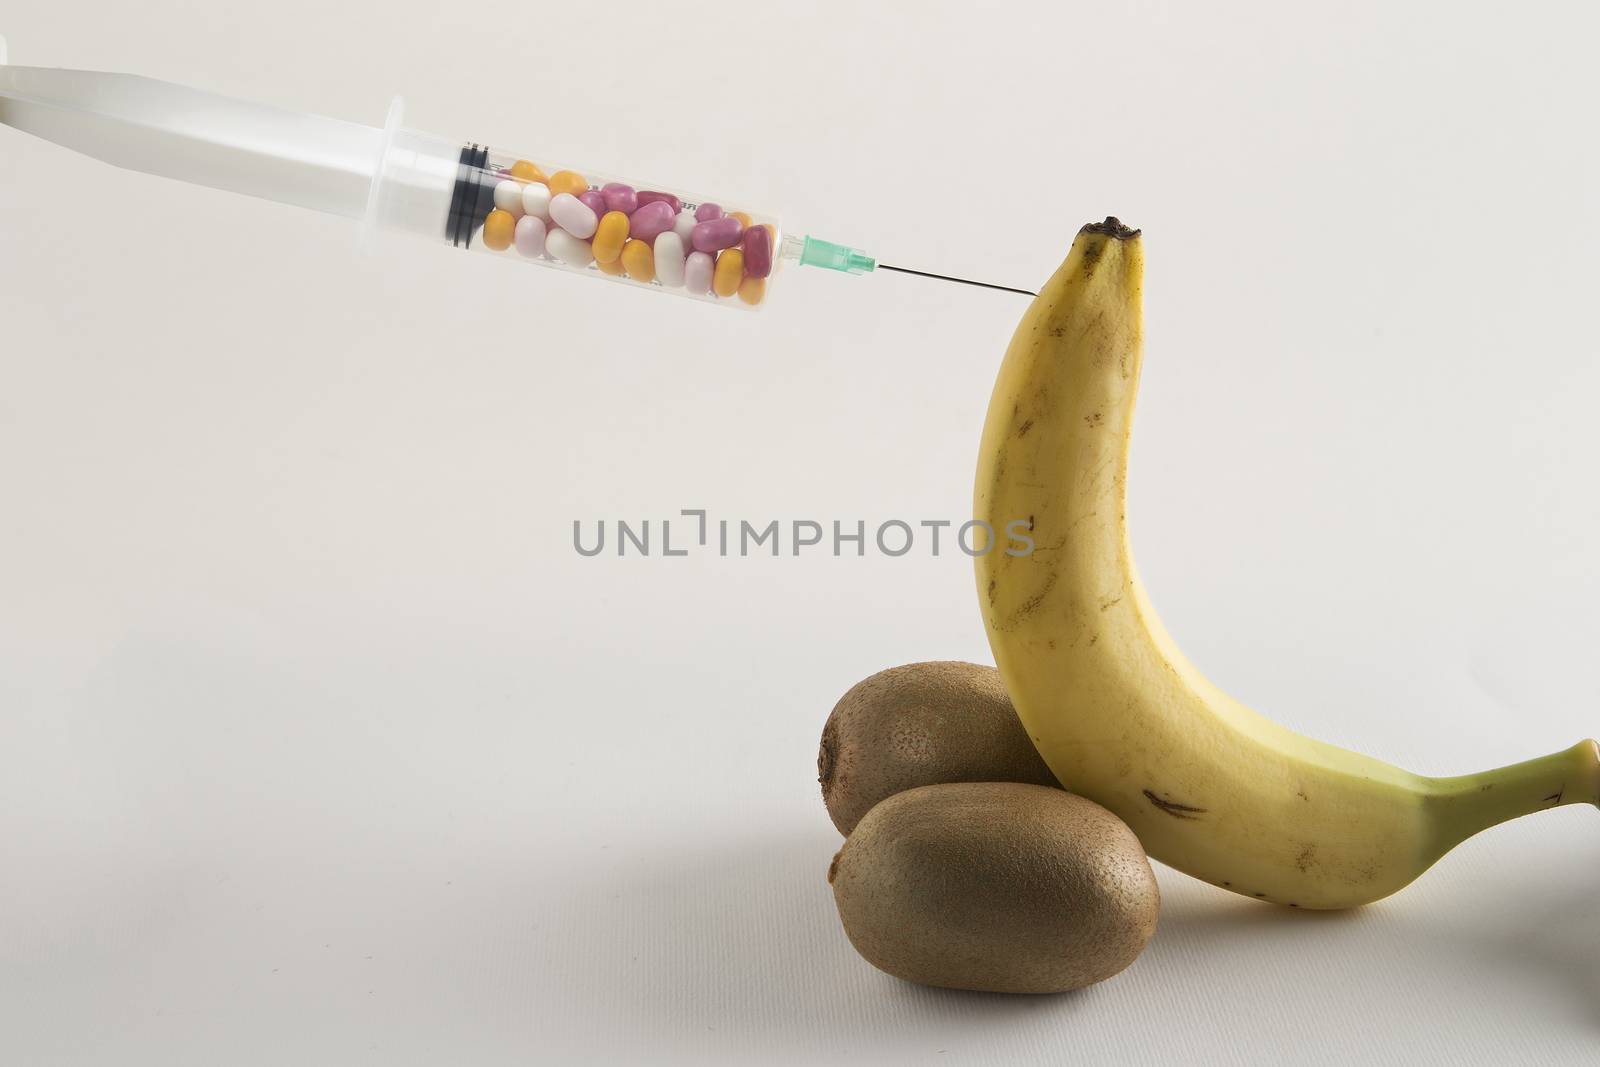 Banana, kiwi and syringe of pills